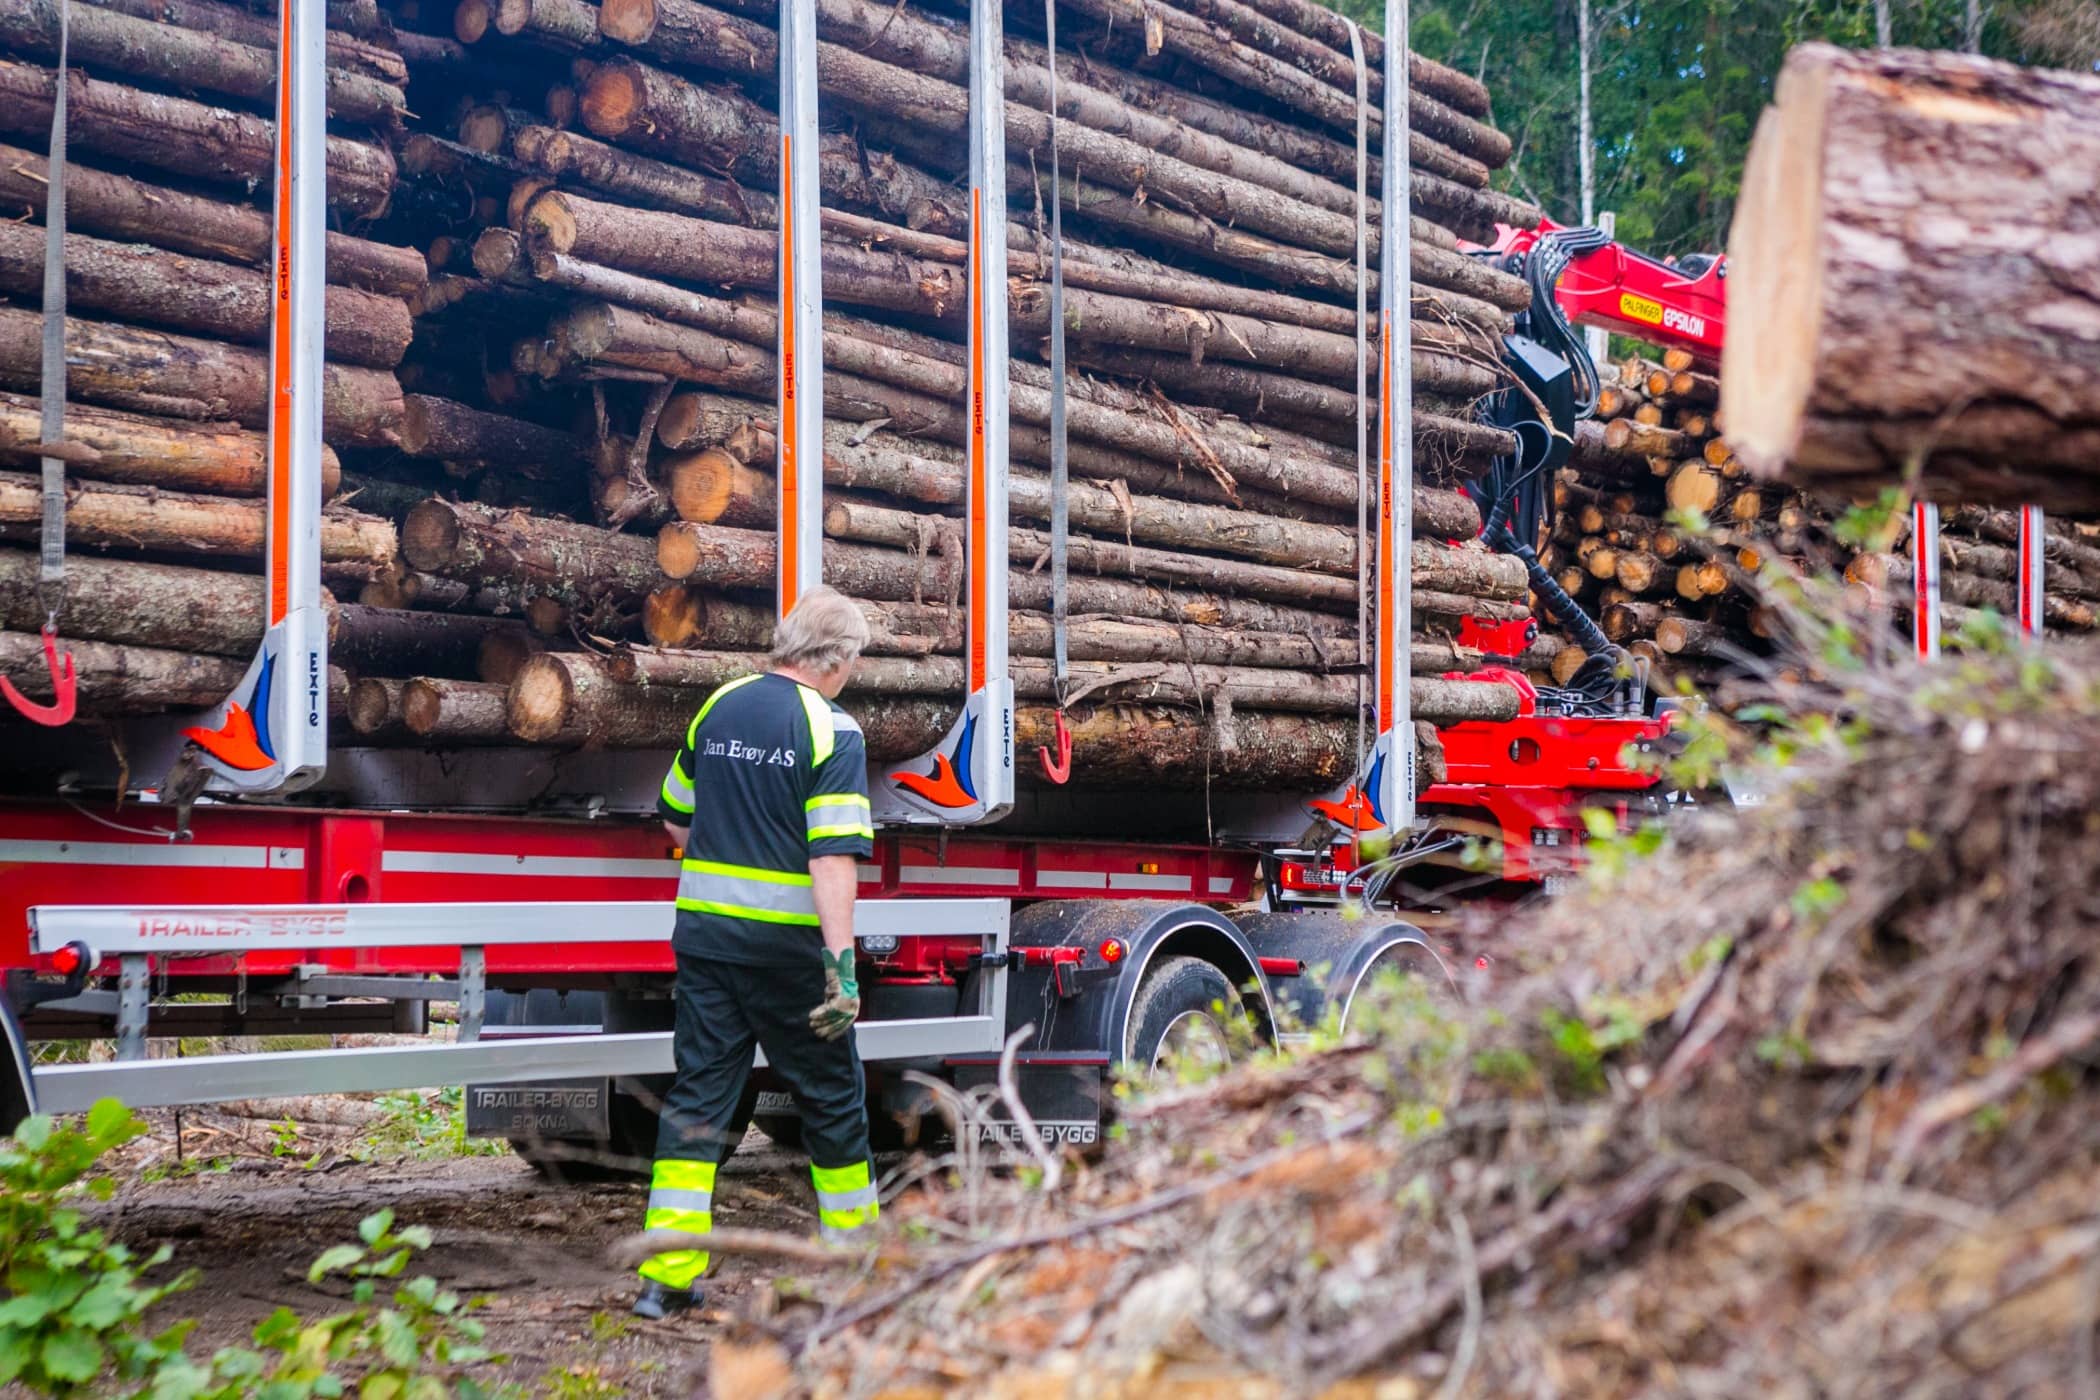 Vehicle, Tree, Wood, Lumber, Transport, Logging